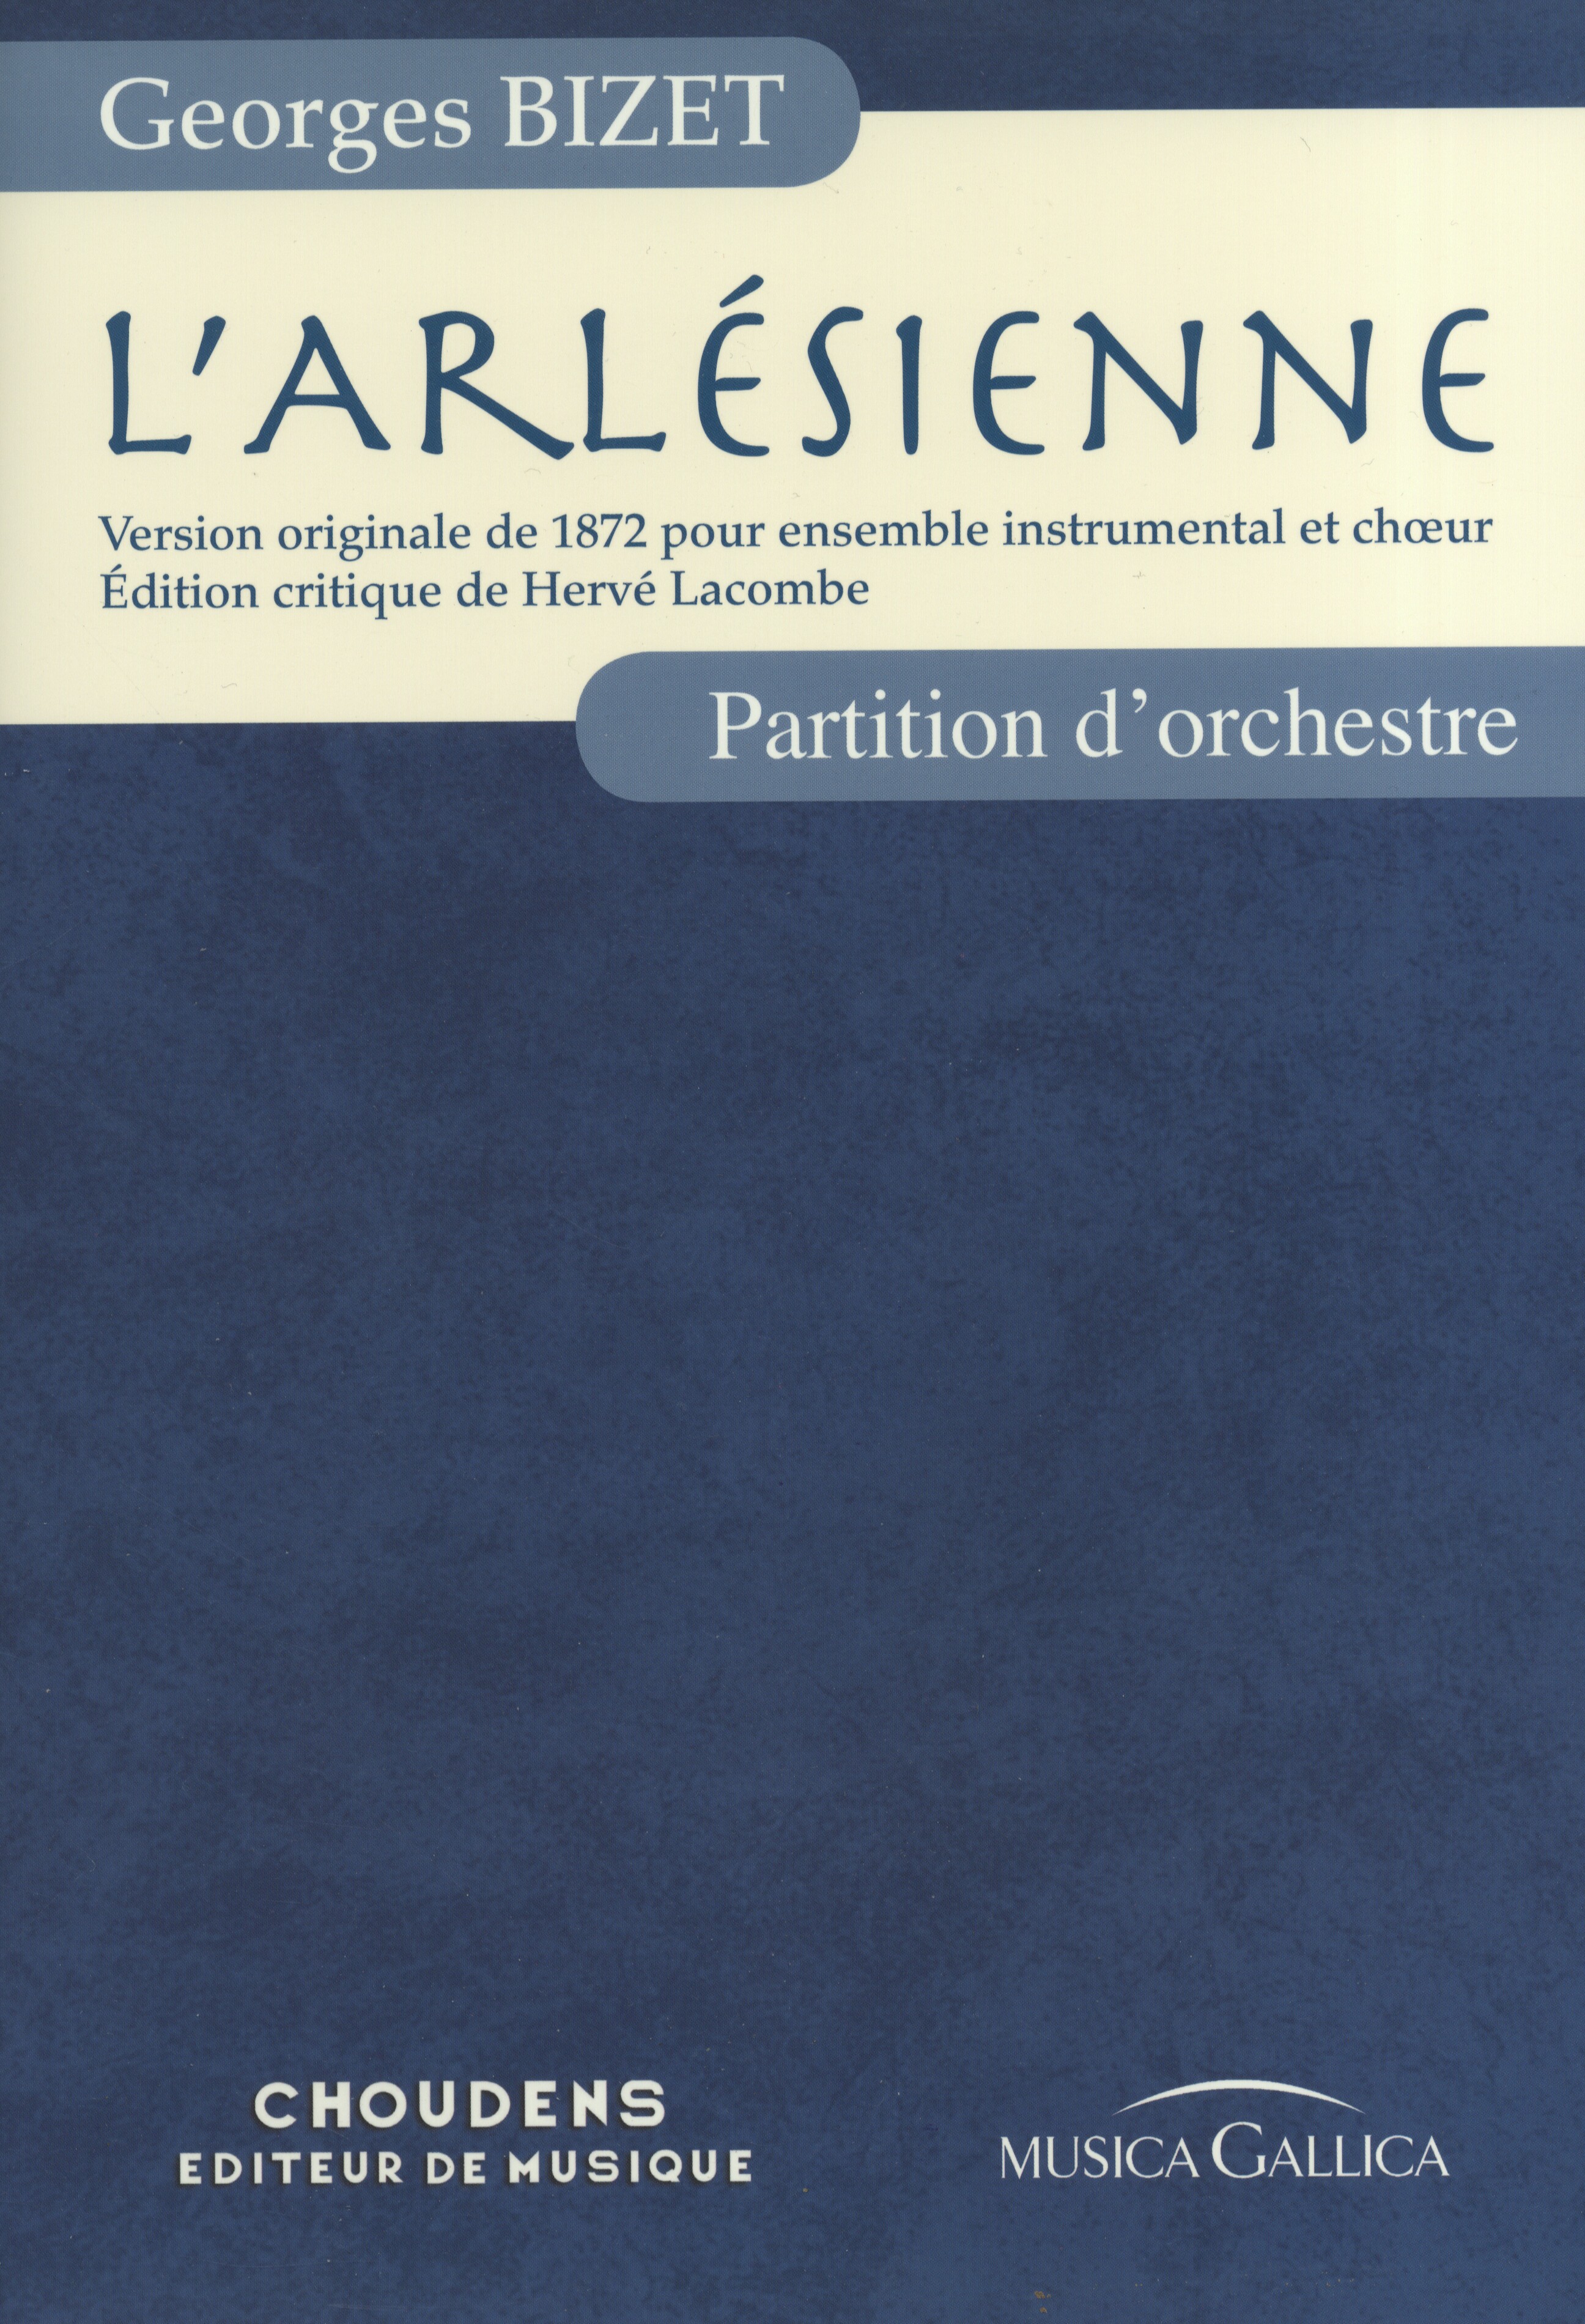 Georges Bizet: L'Arlésienne - Partition d'Orchestre: Orchestra: Score